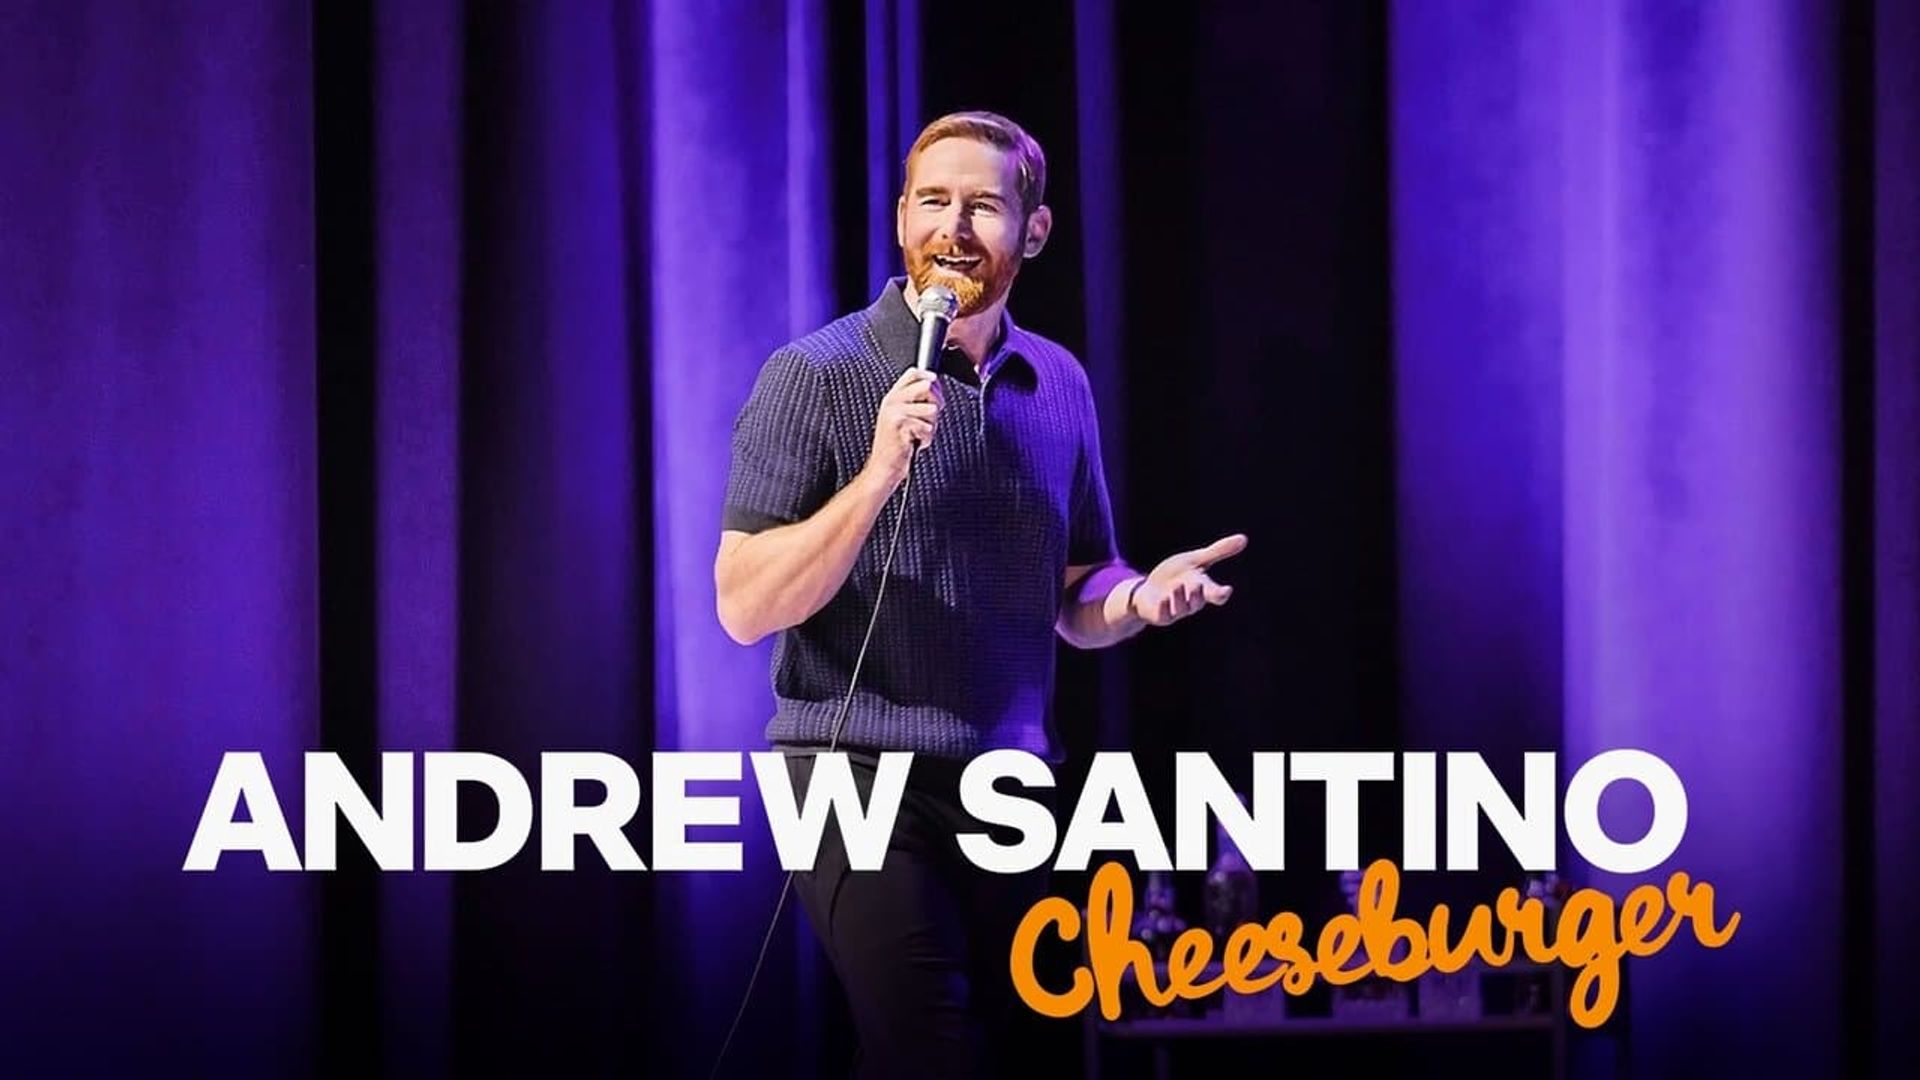 Andrew Santino: Cheeseburger background